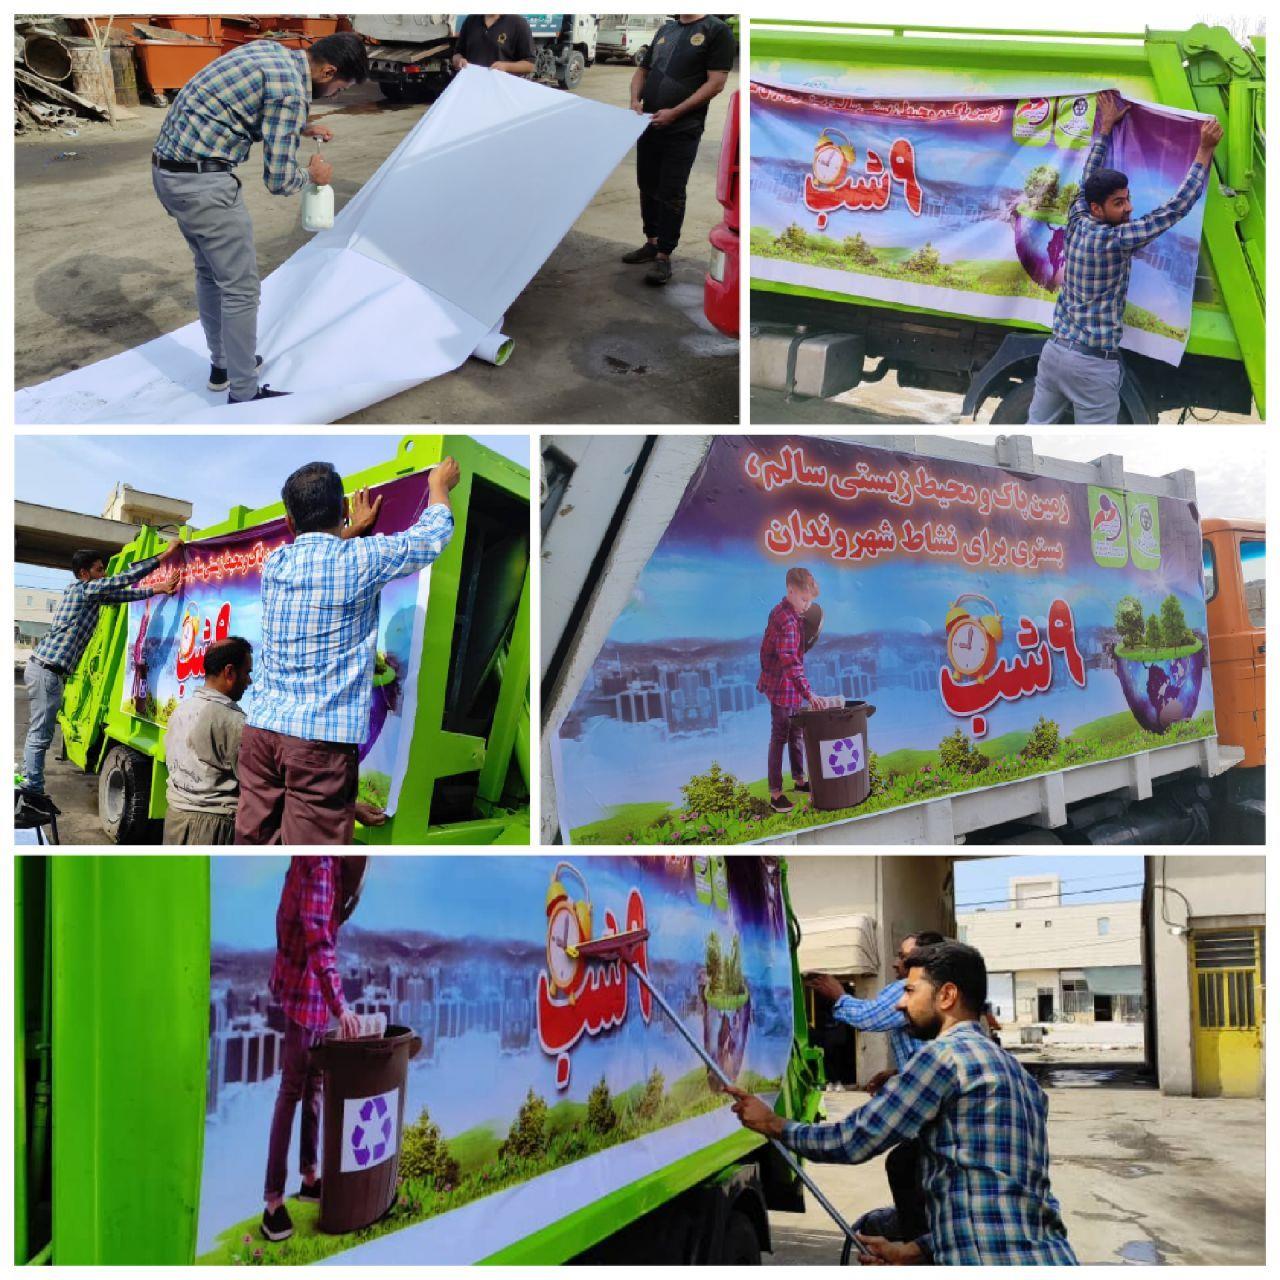 به همت سازمان مدیریت پسماند شهرداری بوشهر؛ برچسب‌های آموزشی بر روی ماشین‌های حمل زباله نصب شد